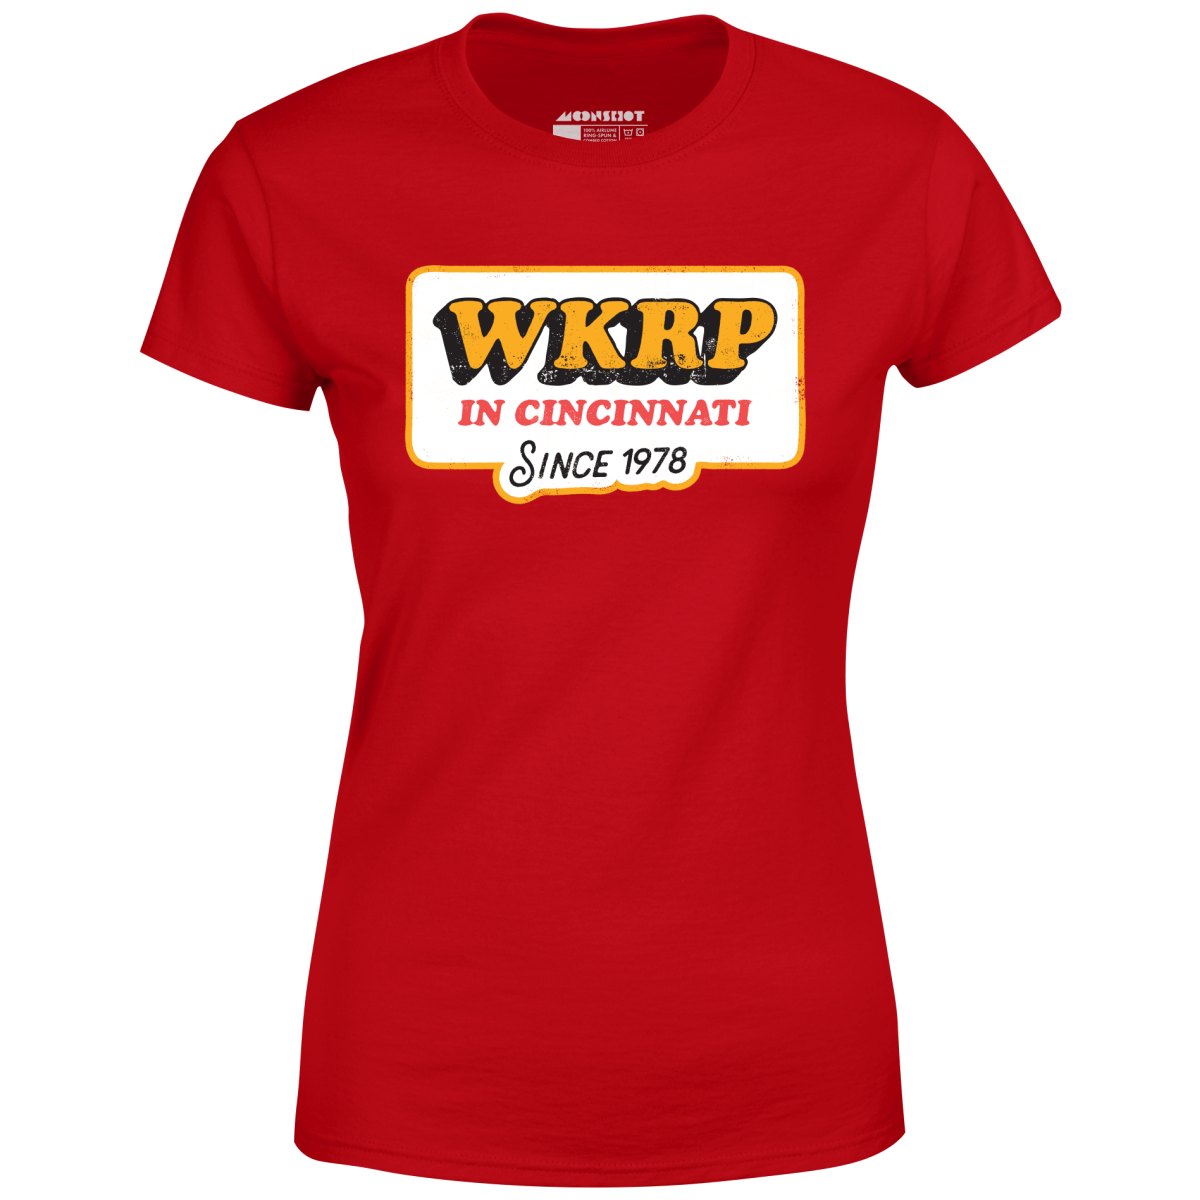 WKRP in Cincinnati - Women's T-Shirt